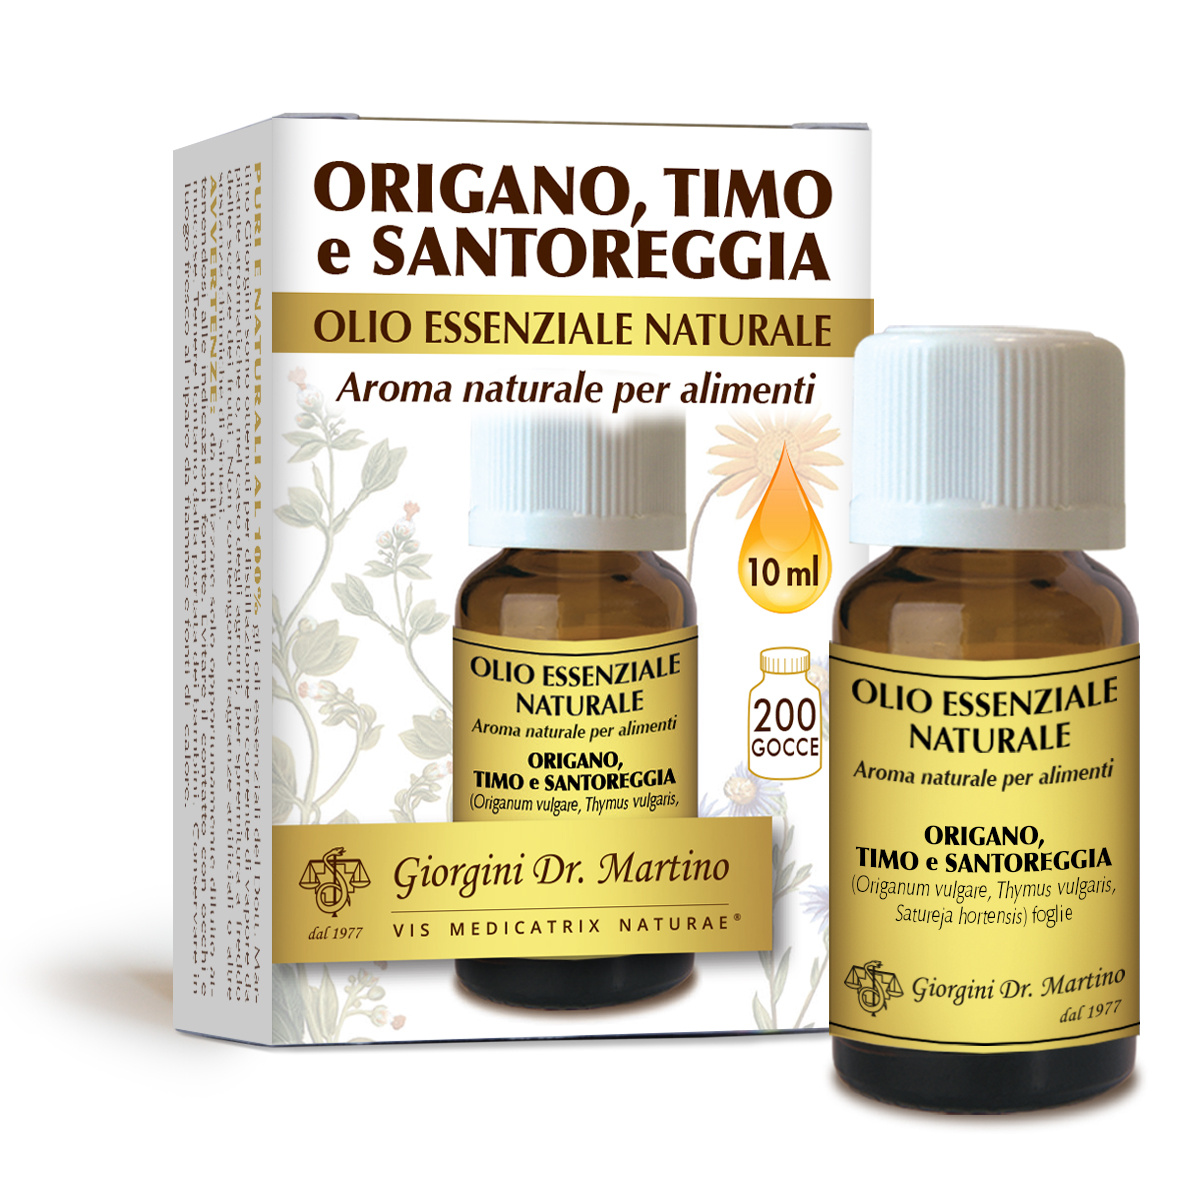 Origano-Timo-Santoreggia olioessenziale naturale 10 ml